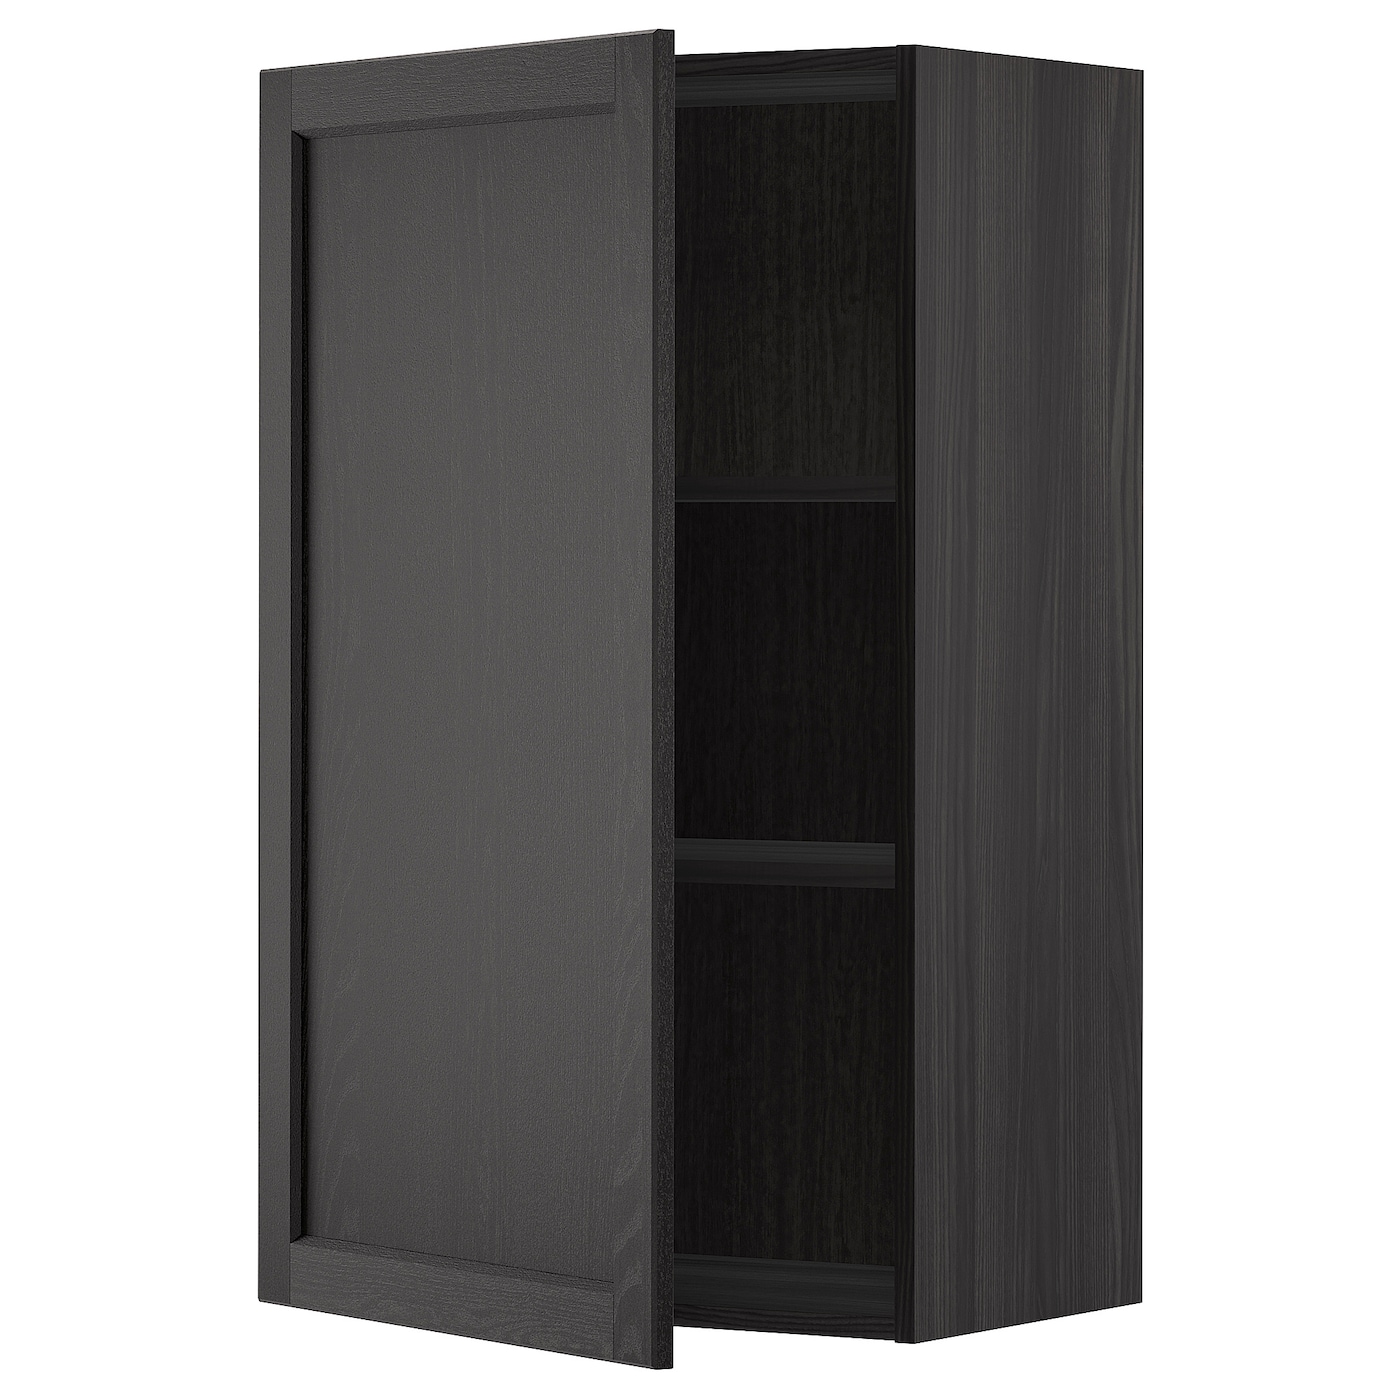 Навесной шкаф с полкой - METOD IKEA/ МЕТОД ИКЕА, 100х60 см, черный